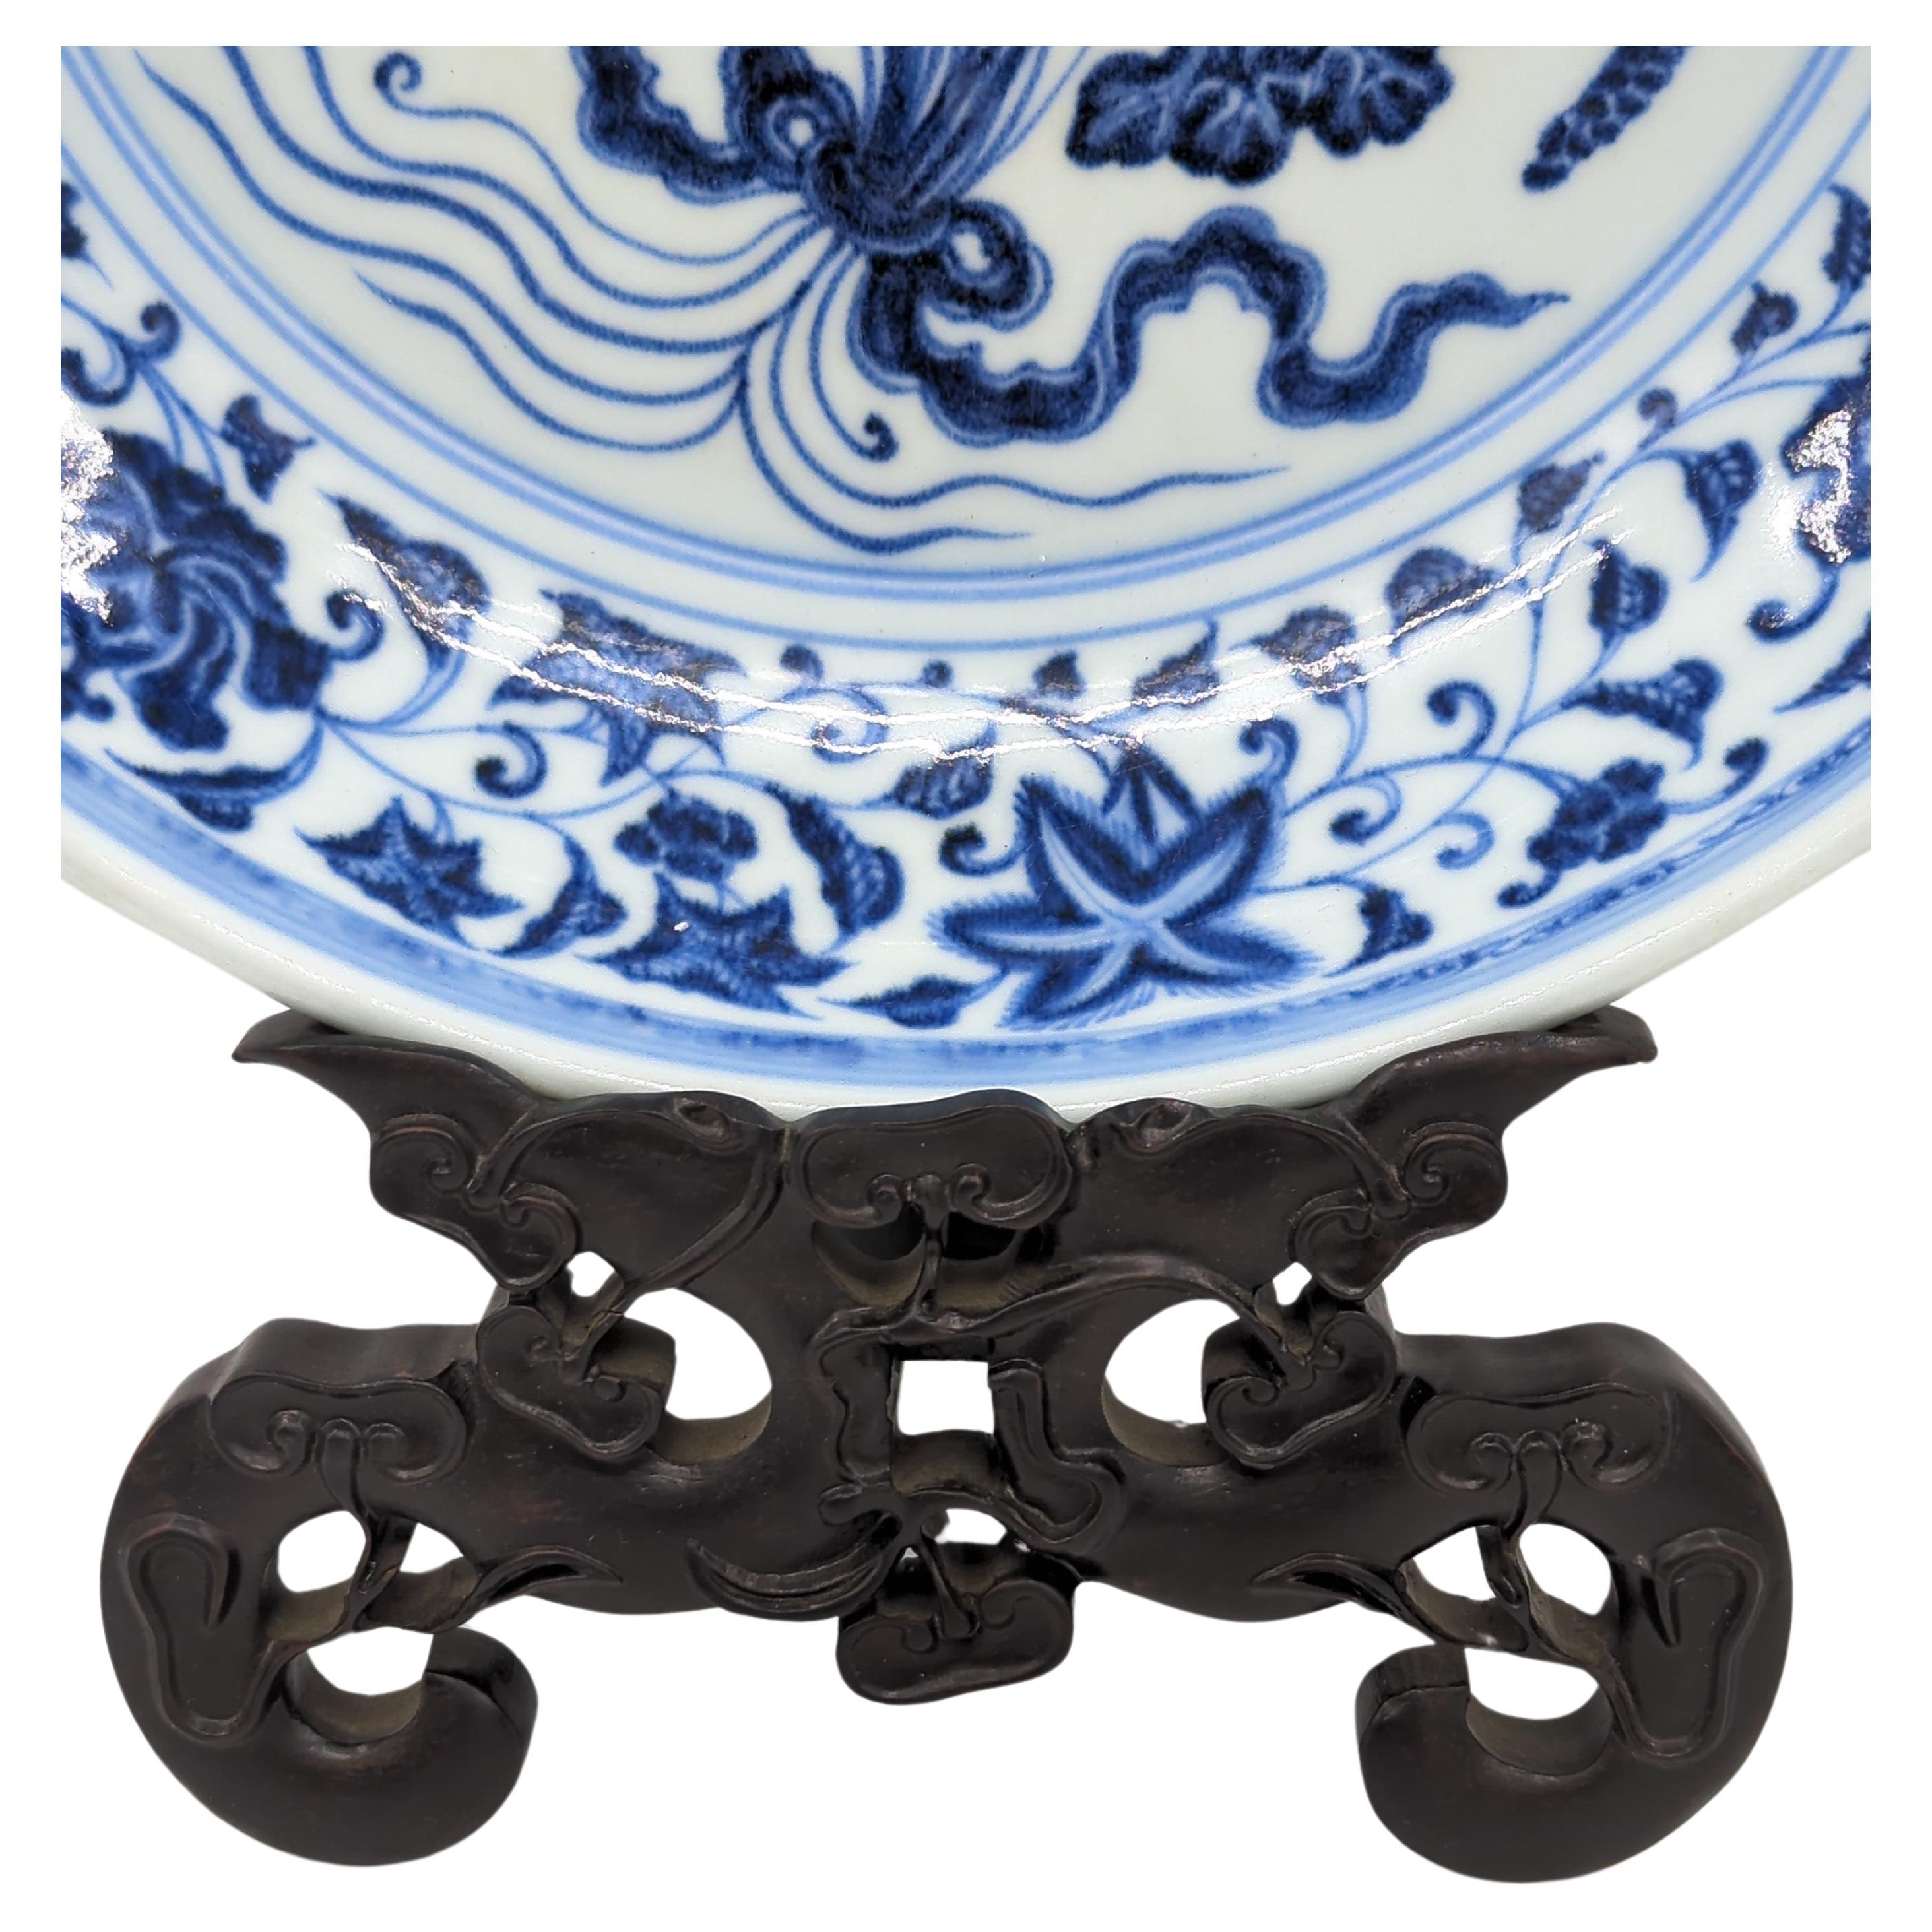 Chargeur ancien en porcelaine chinoise, décoré à la main en bleu et blanc sous glaçure, illustrant le style Revere Ming. Le point central, un médaillon à l'intérieur d'un double cercle, représente un bouquet de fleurs de lotus reliées par un ruban